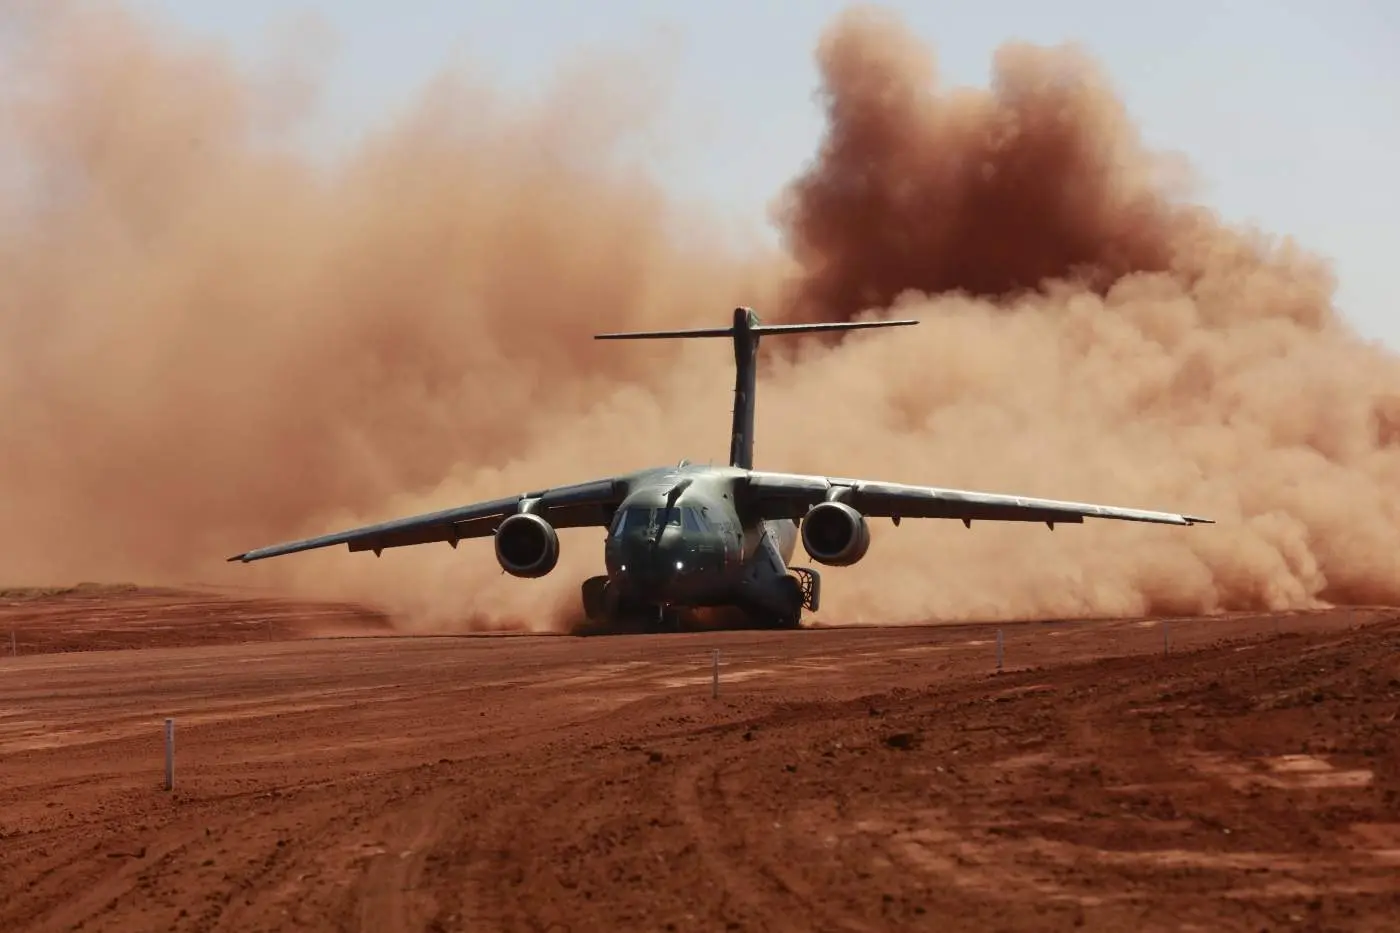 KC-390 MILLENIUM: A VERDADE SOBRE A REDUÇÃO DE AVIÕES ENCOMENDADOS PELA  FORÇA AÉREA: 22, 21 OU 15? 